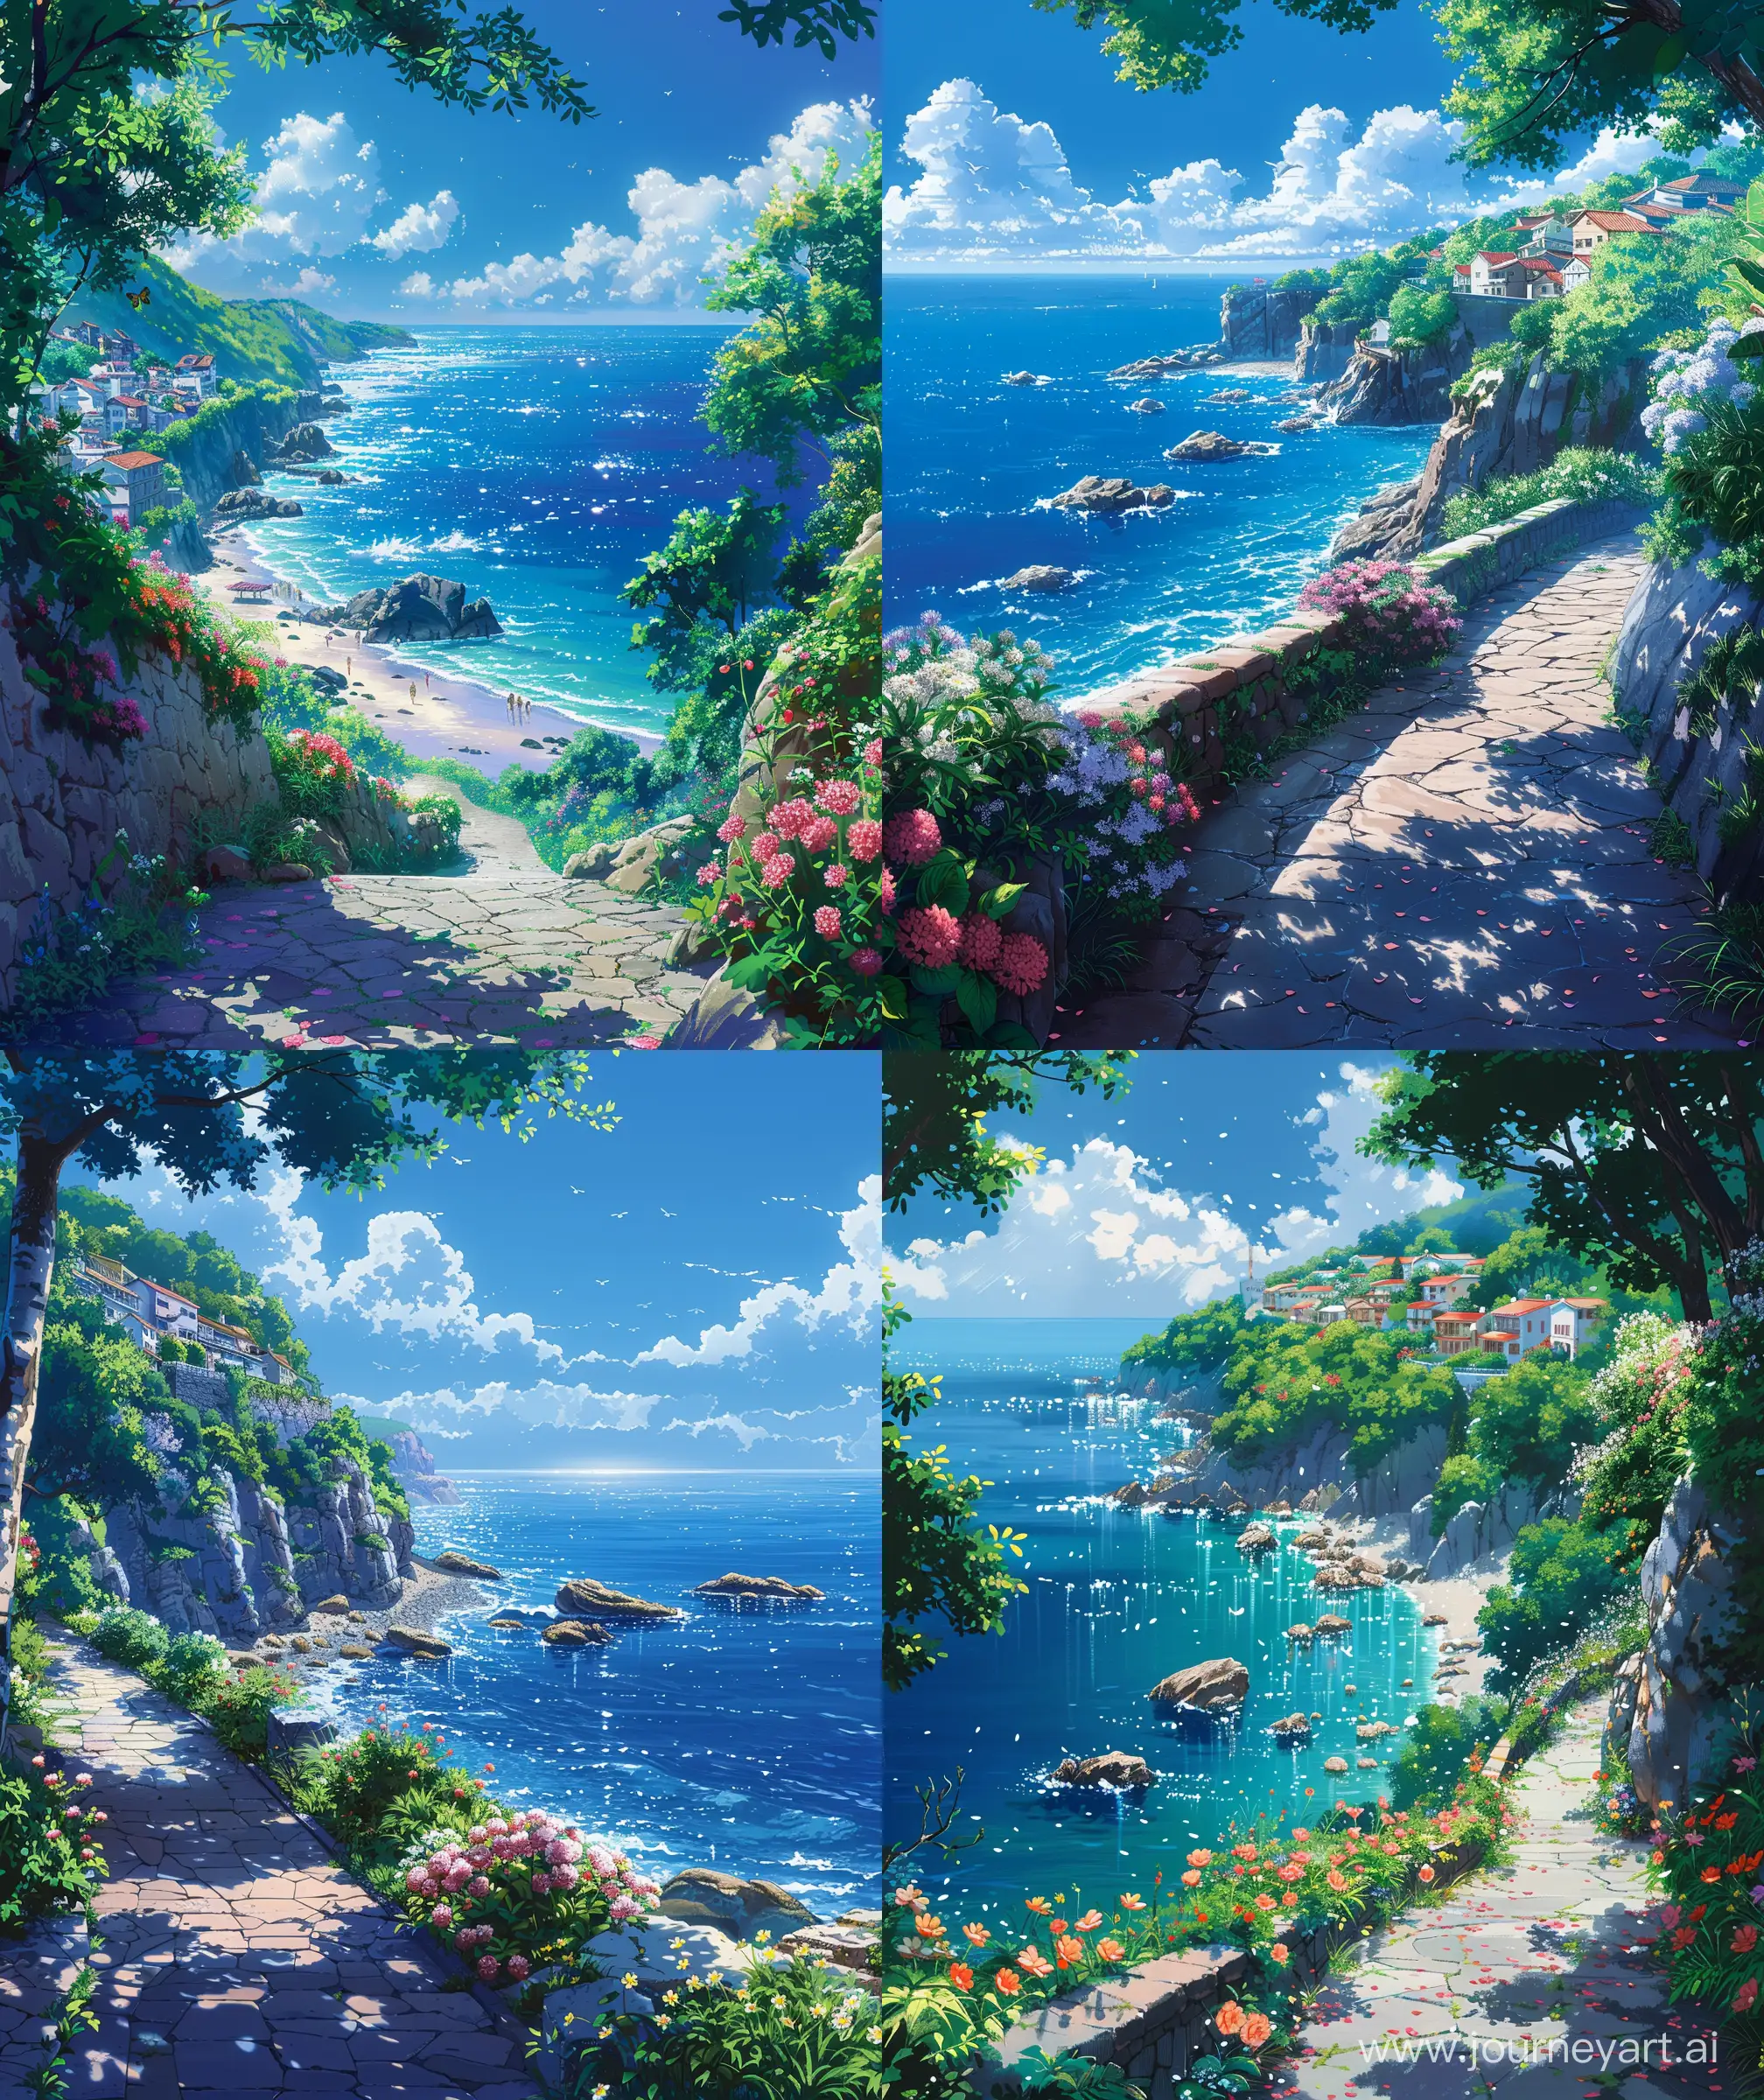 Serene-Beachside-Park-Walkway-in-Makoto-Shinkai-Style-Anime-Scenery